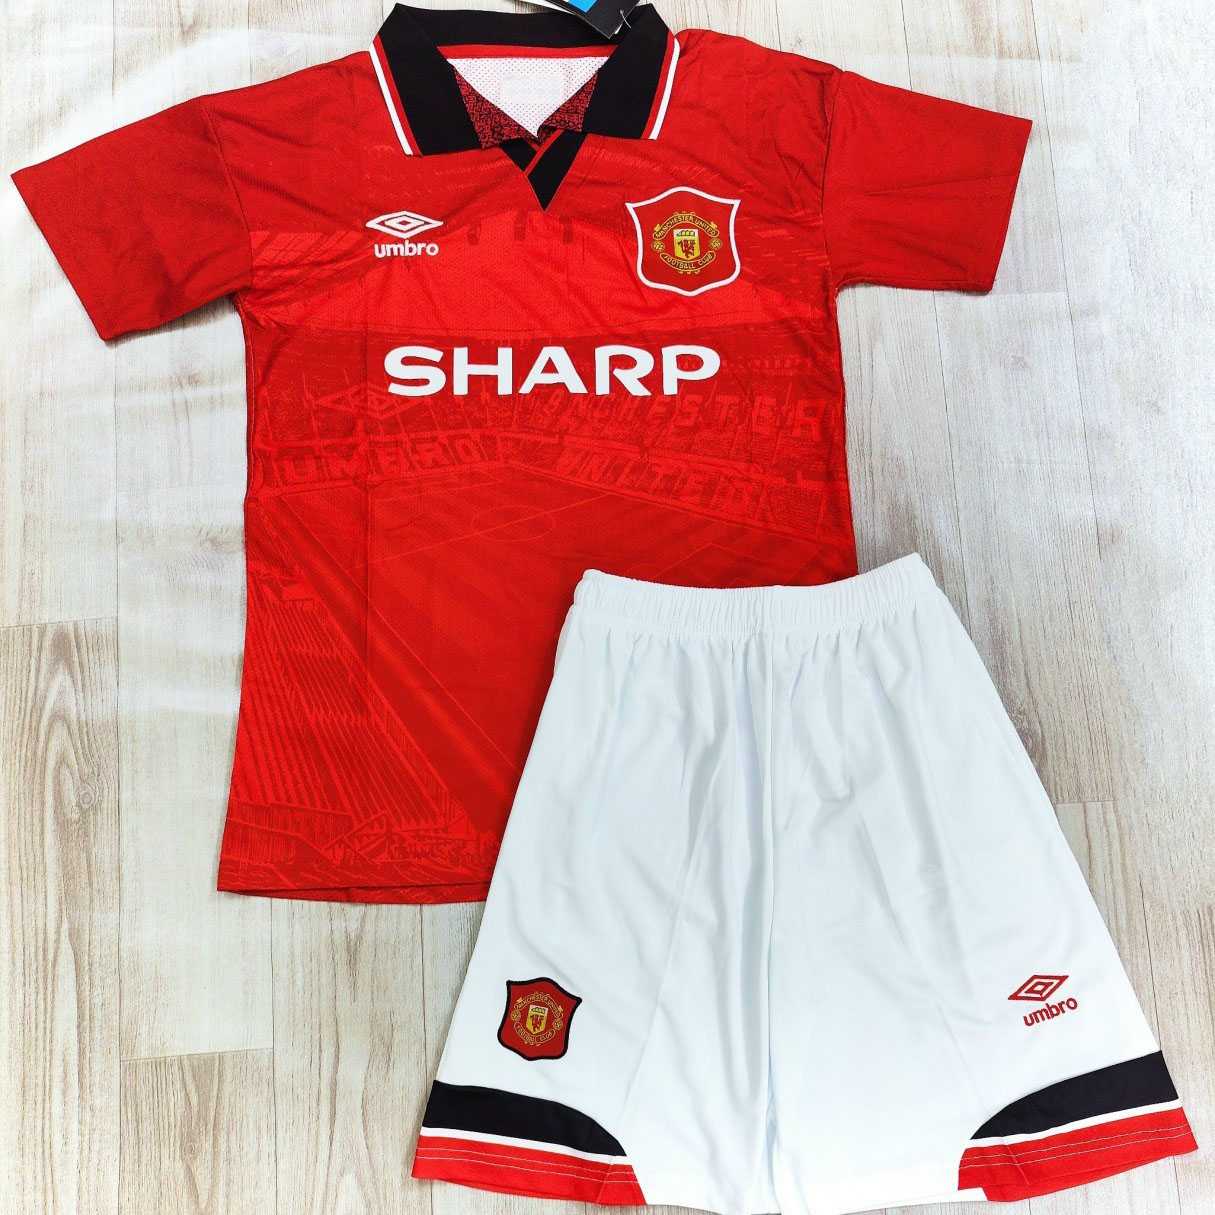 Bộ quần áo đá bóng clb MU Manchester United Sharp cổ tròn tam giác 1998 1999 màu đỏ quần trắng 98 99 1